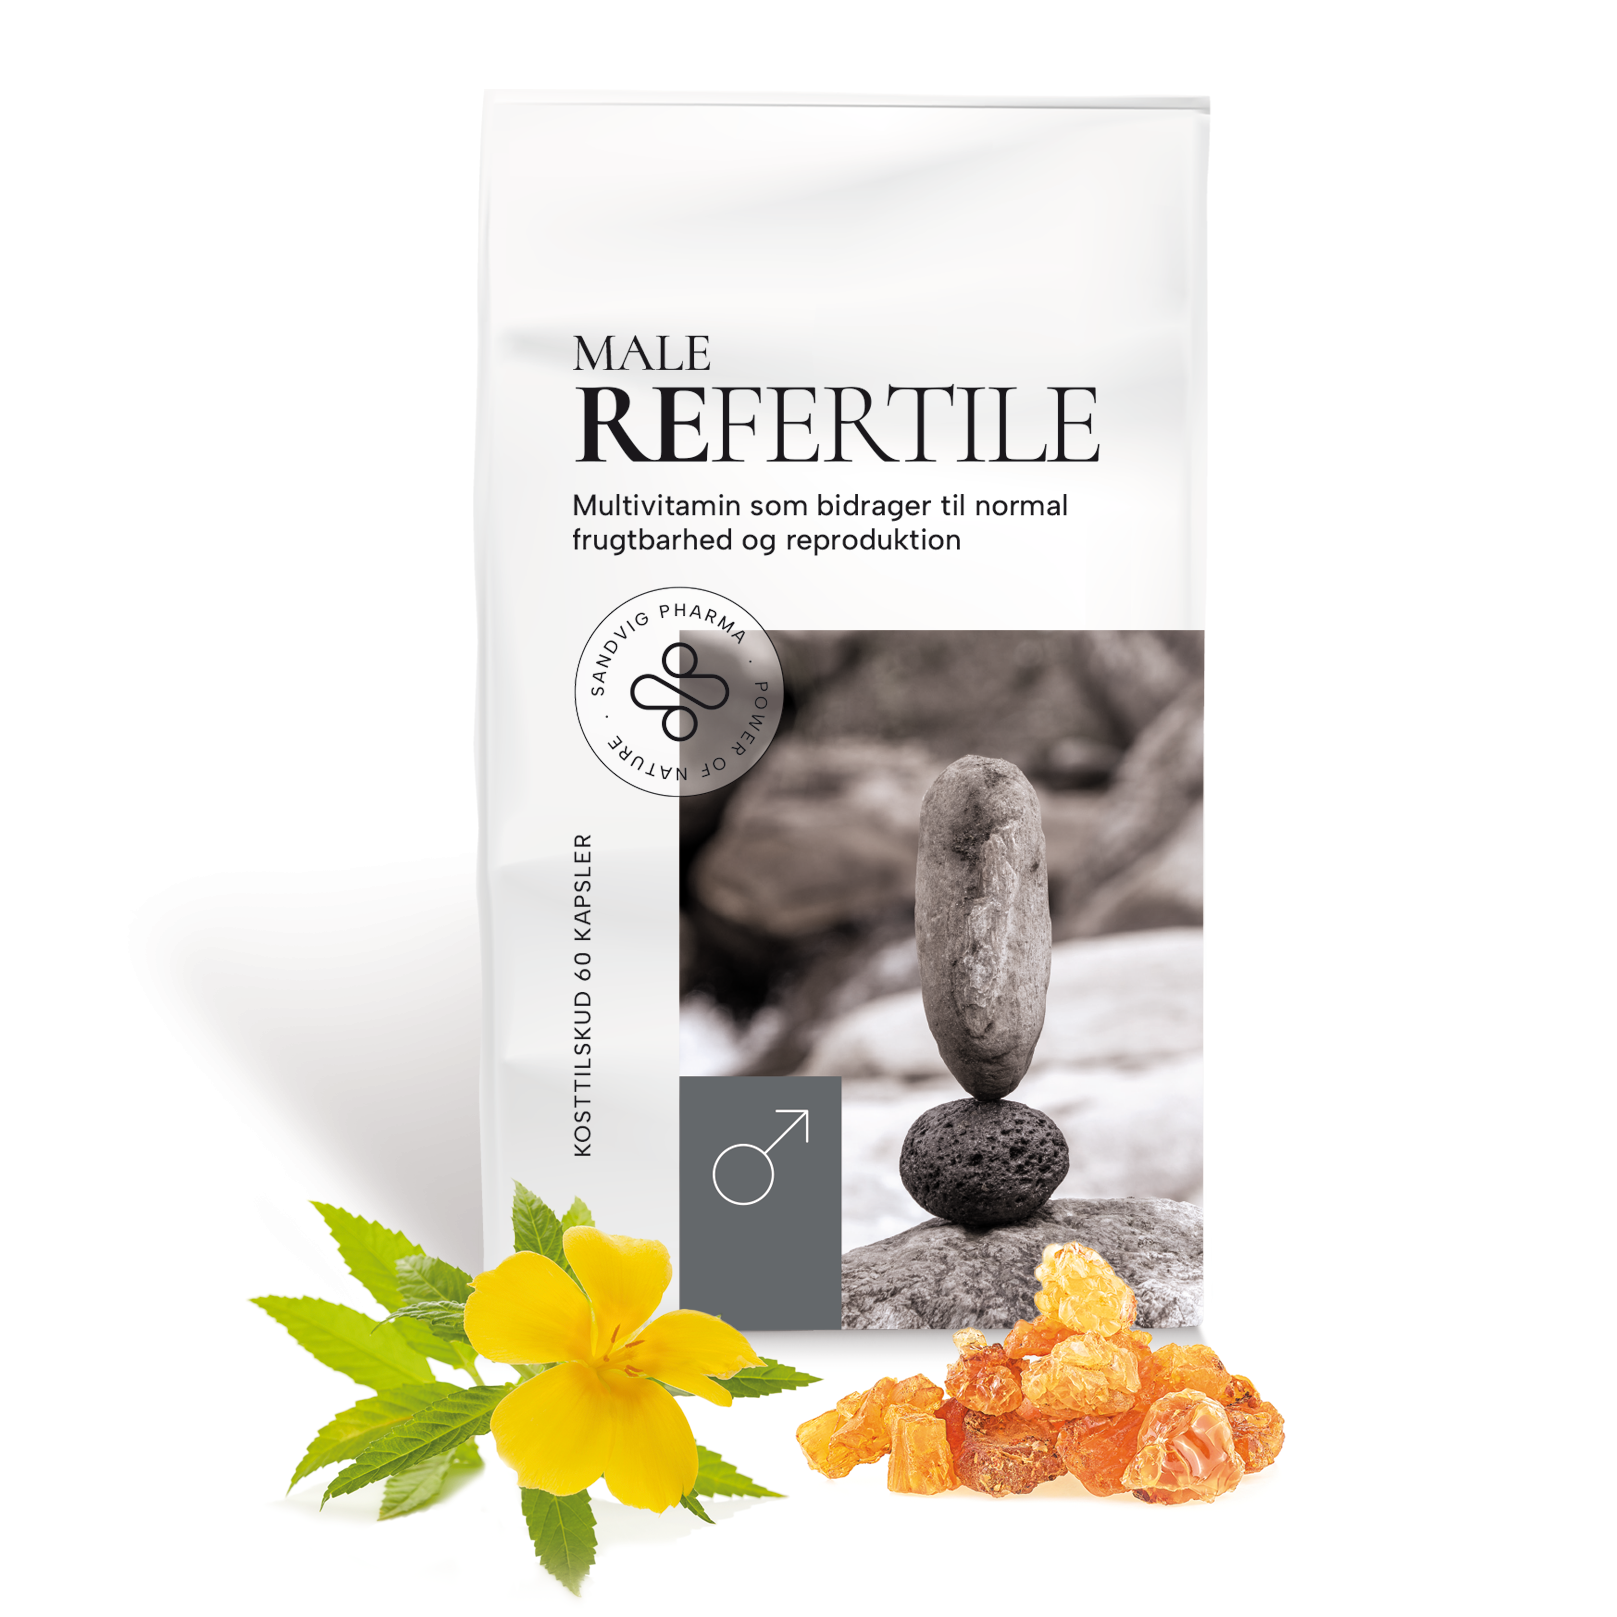 REFERTILE bidrager til normal frugtbarhed og reproduktion. 